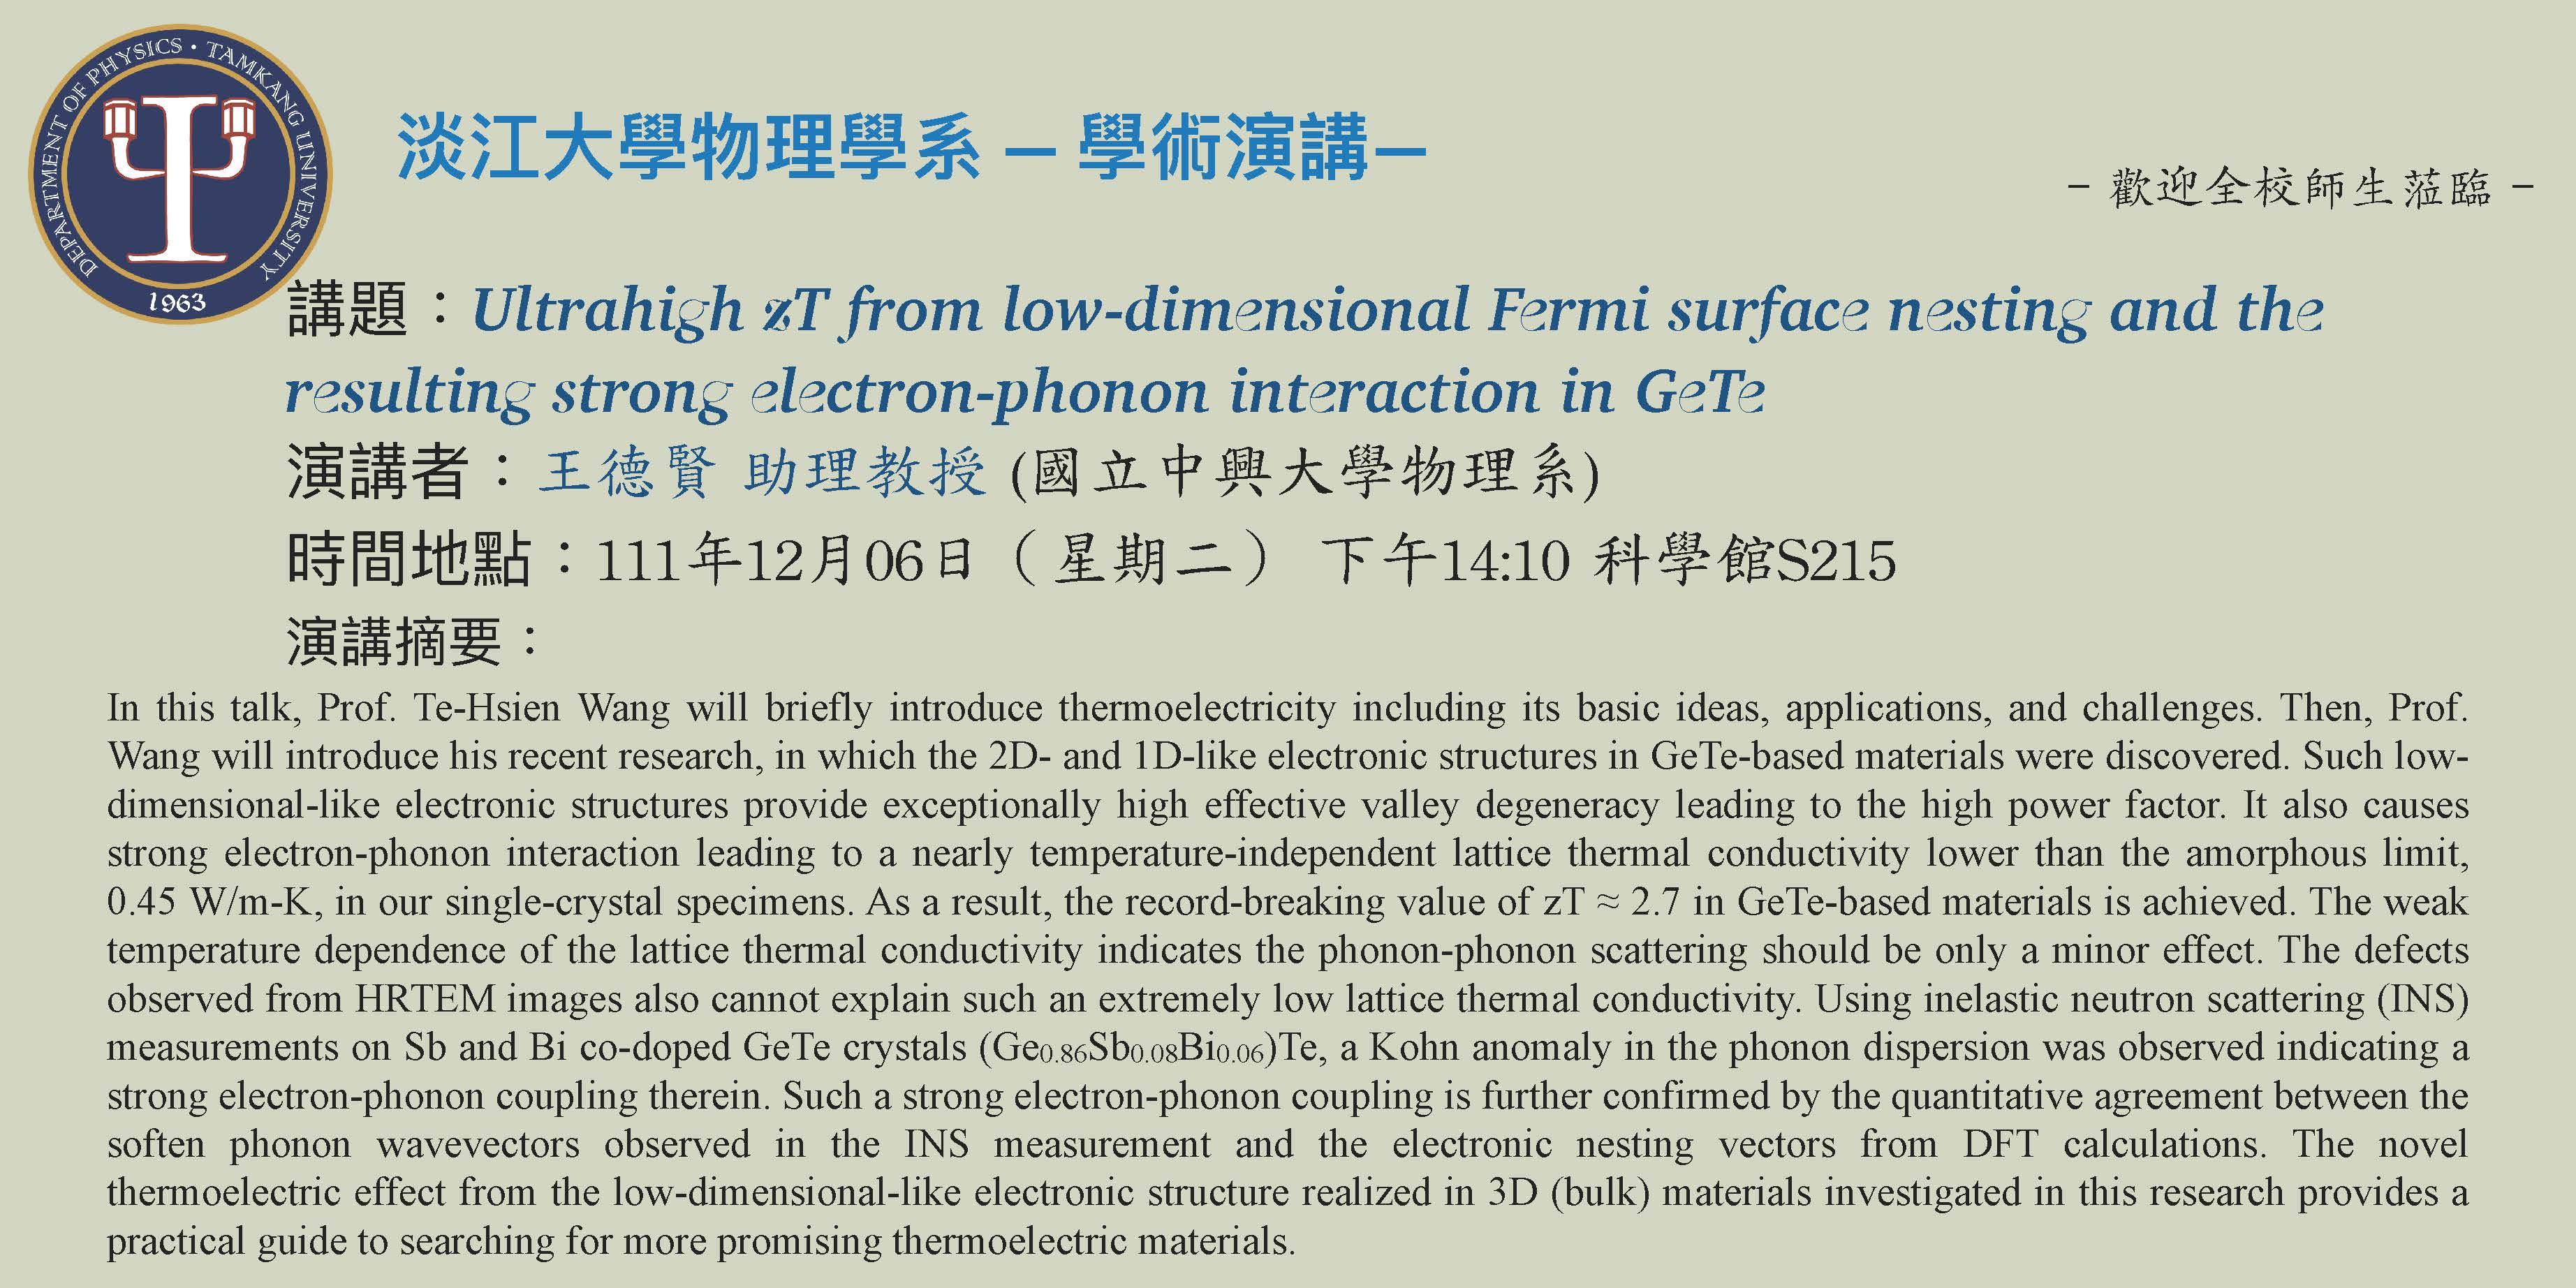 【演講】111.12.06 講題：Ultrahigh zT from low-dimensional Fermi surface nesting and the resulting strong electron-phonon interaction in GeTe